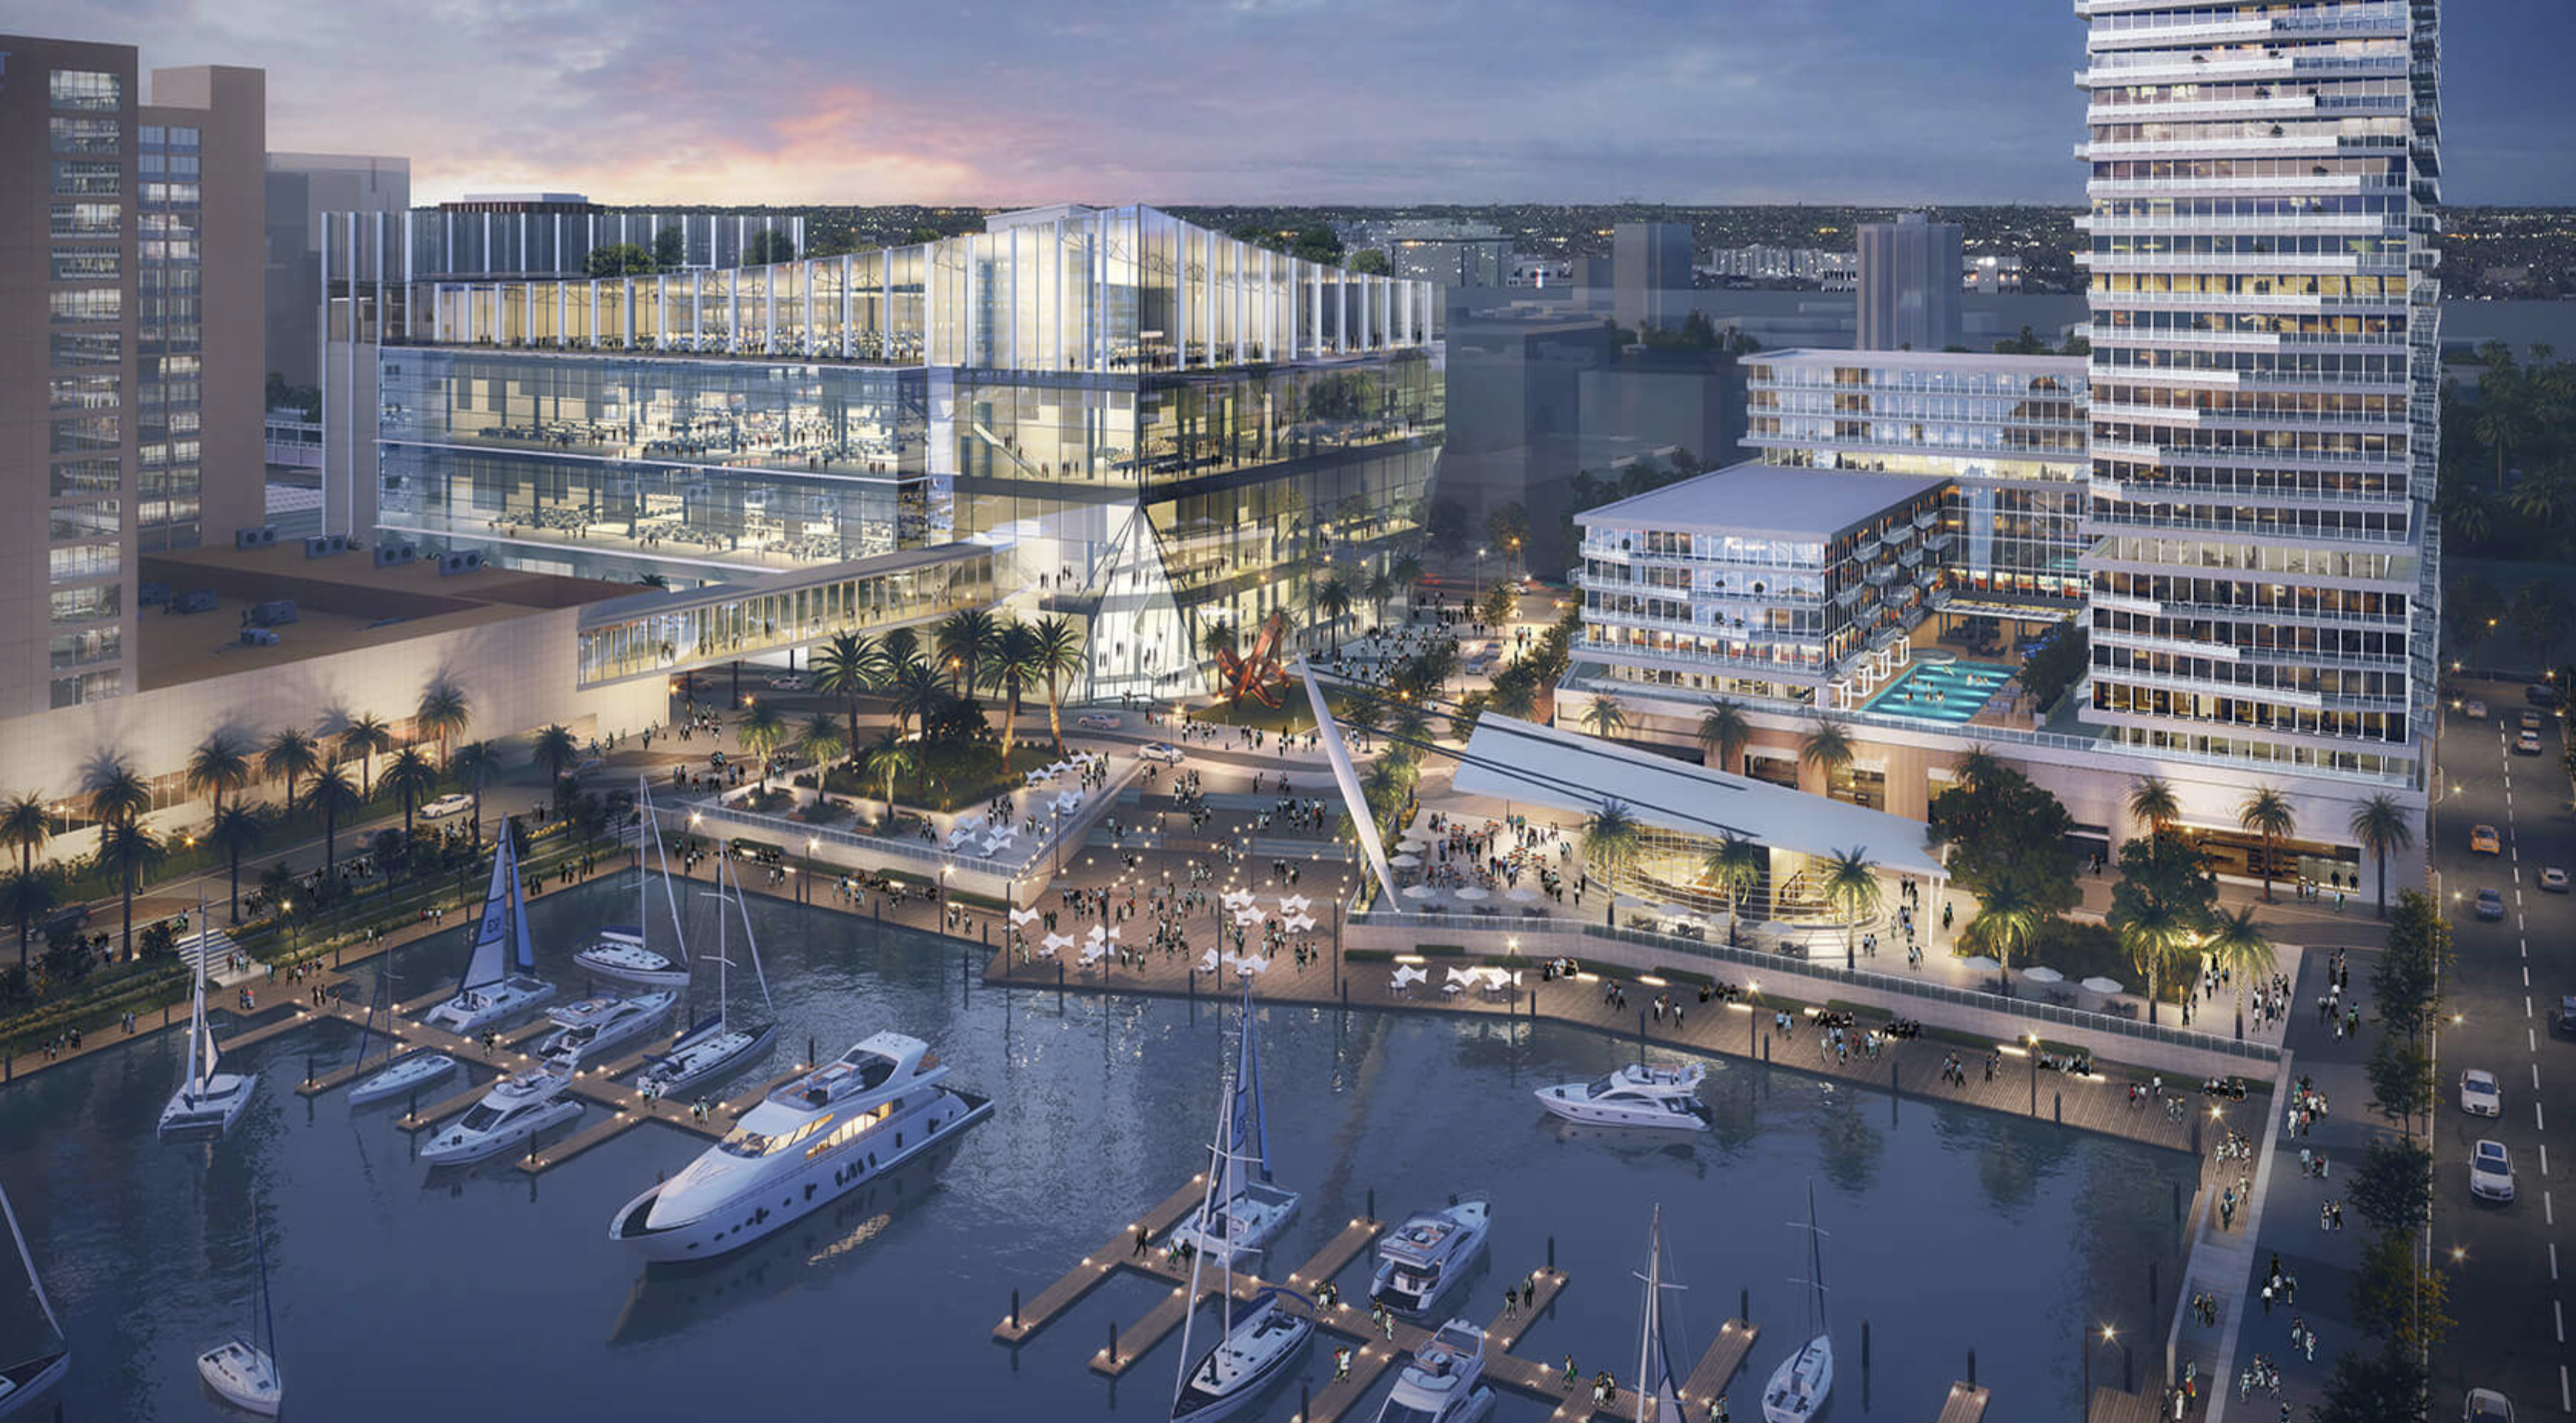 Riverfront Jacksonville. Designed by Gensler.